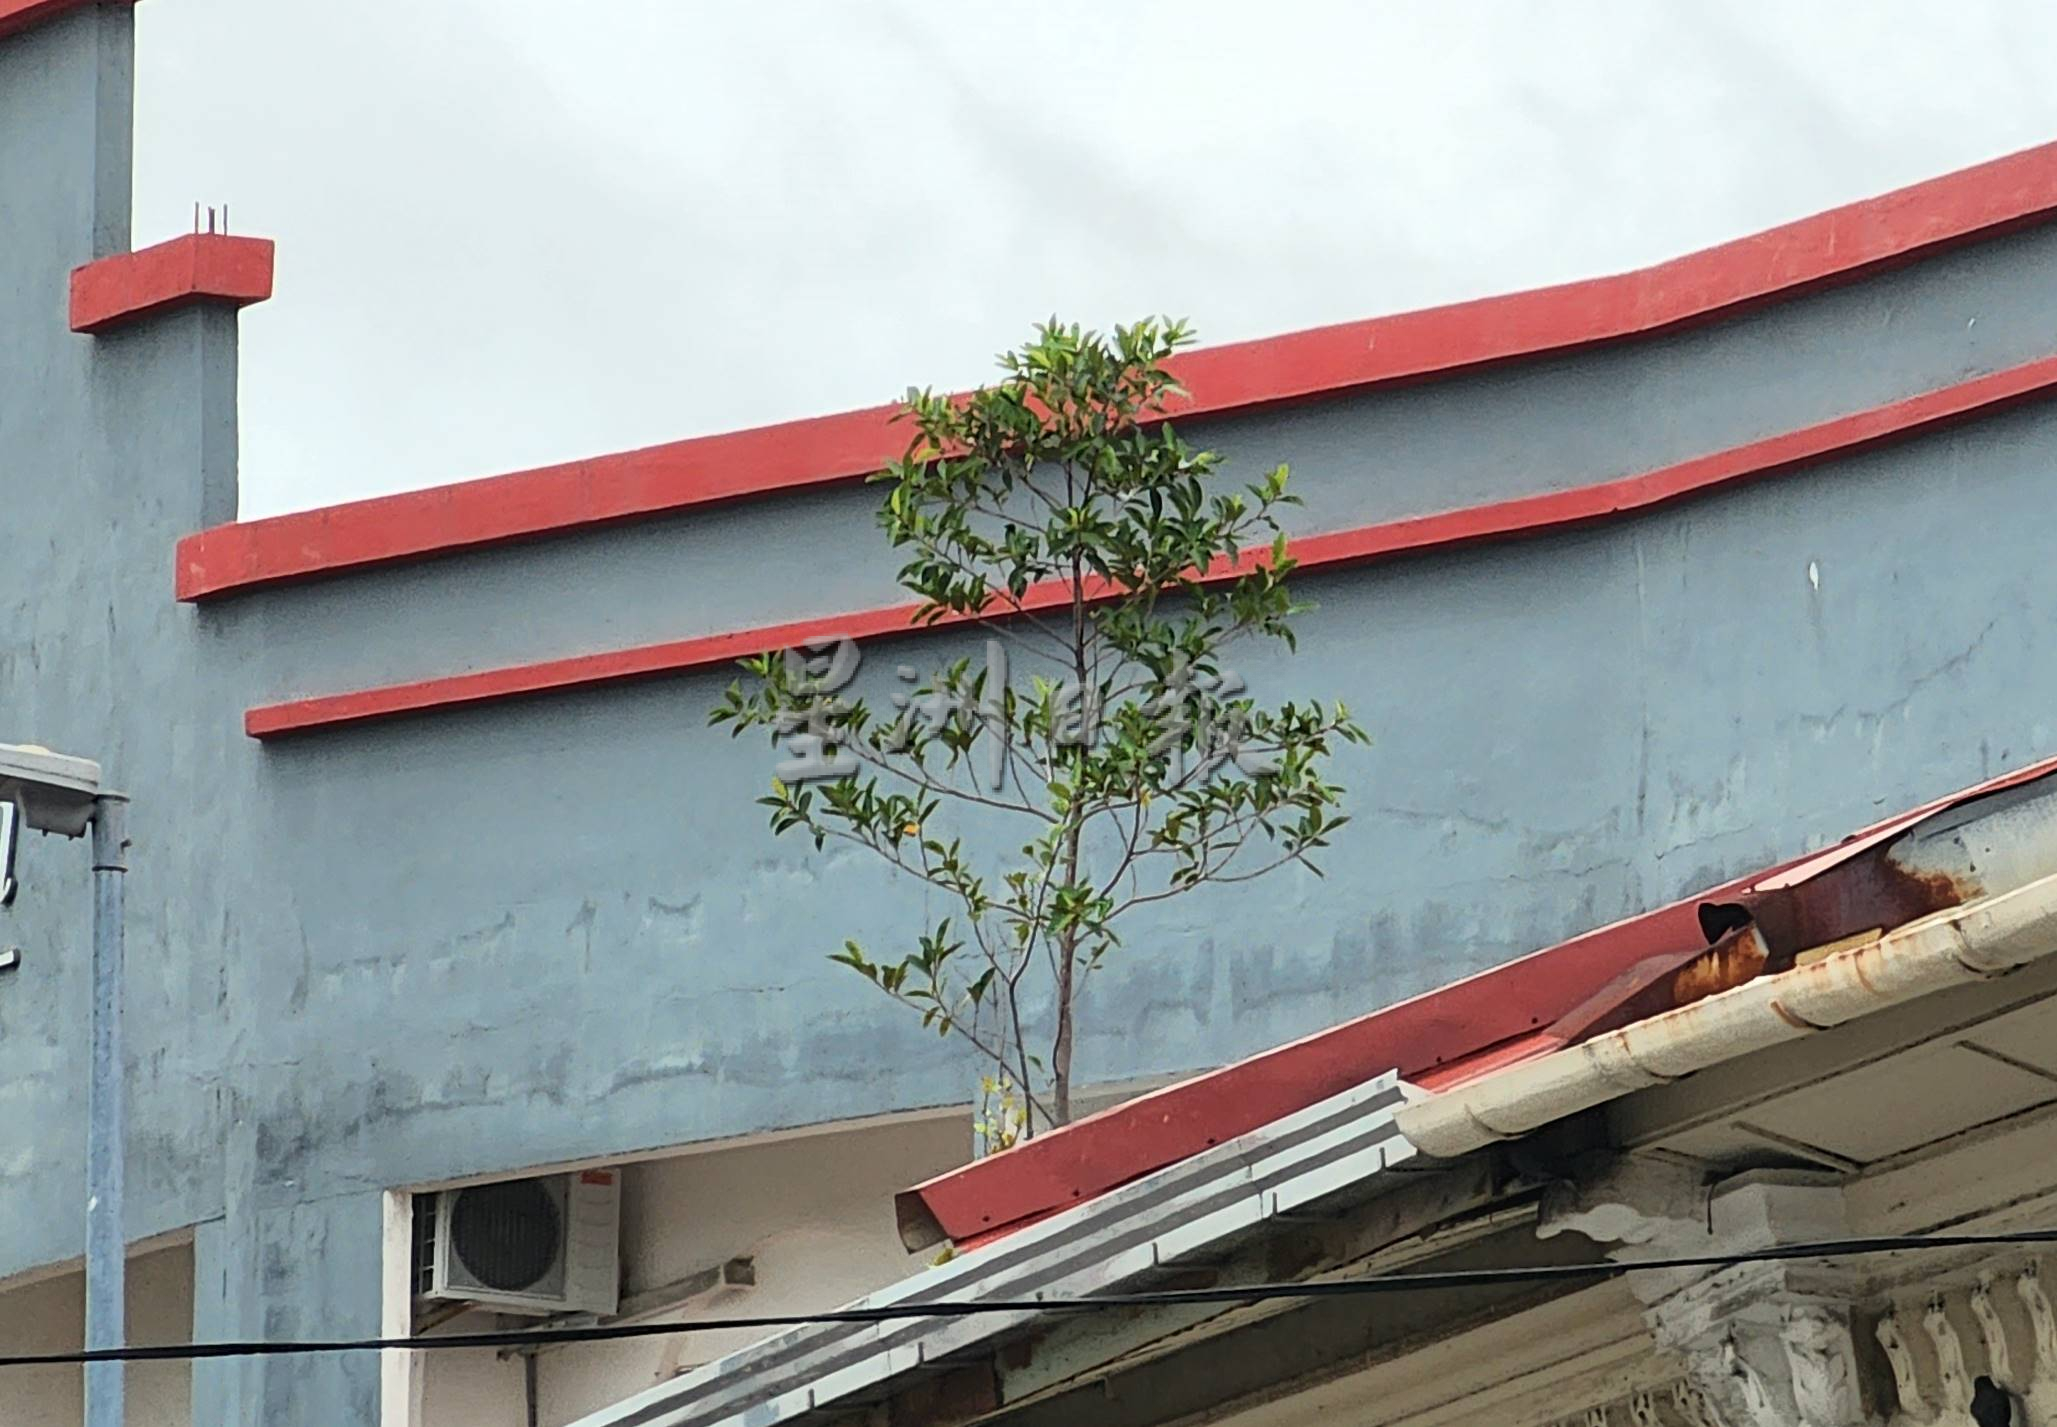 （古城第二版主文）风势转强，梁证法促清理屋顶上植物以免发生意外